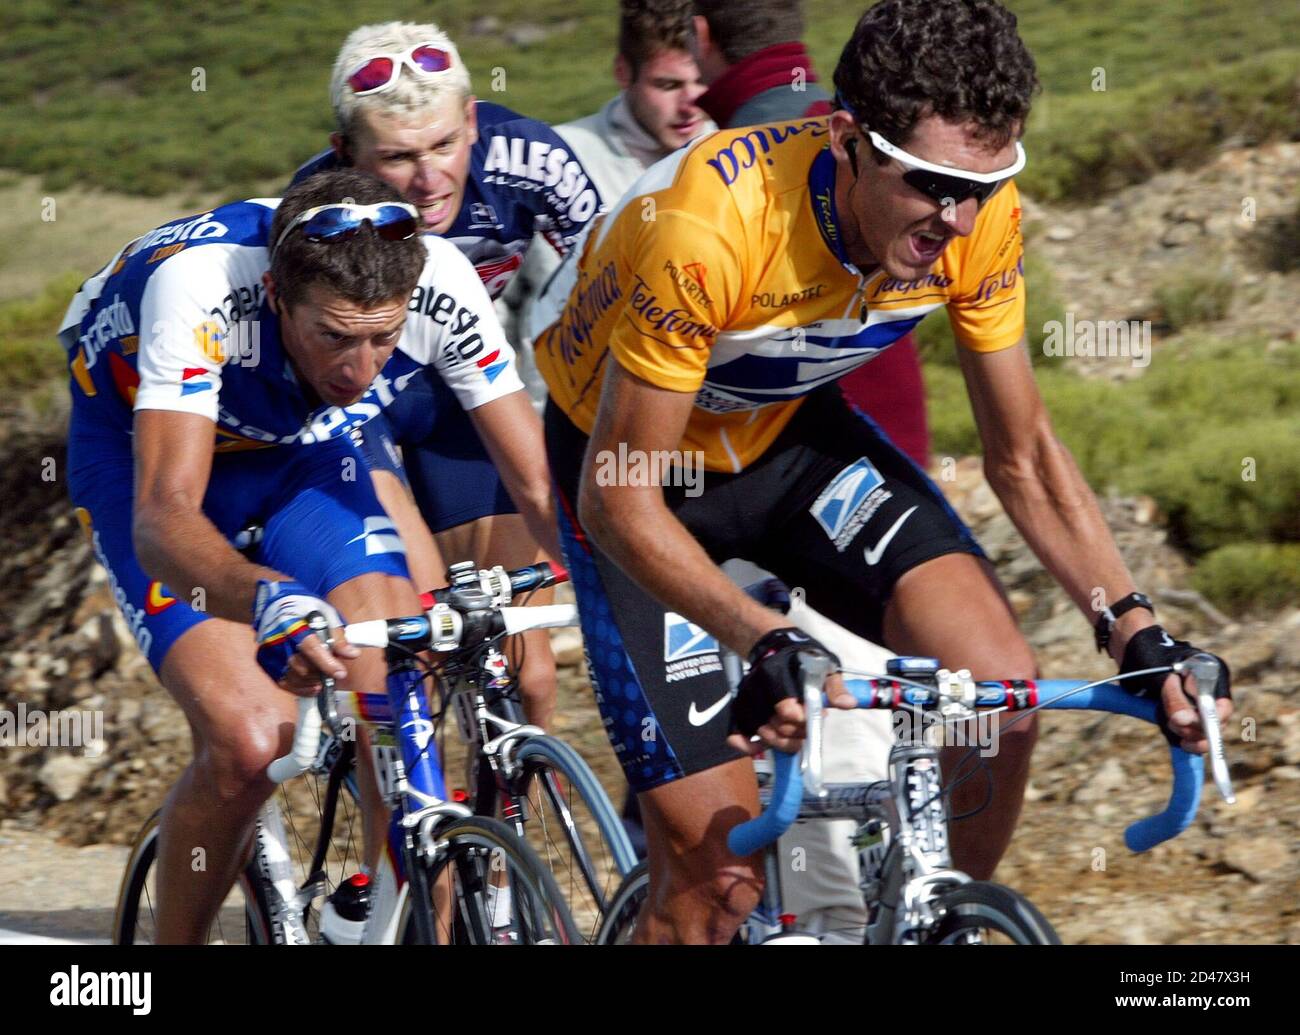 Roberto Heras (R), le leader du Tour d'Espagne, effectue des cycles au  cours de la 18e étape de la course de vélo du Tour d'Espagne, suivie par  José Antonio Flecha (L) et